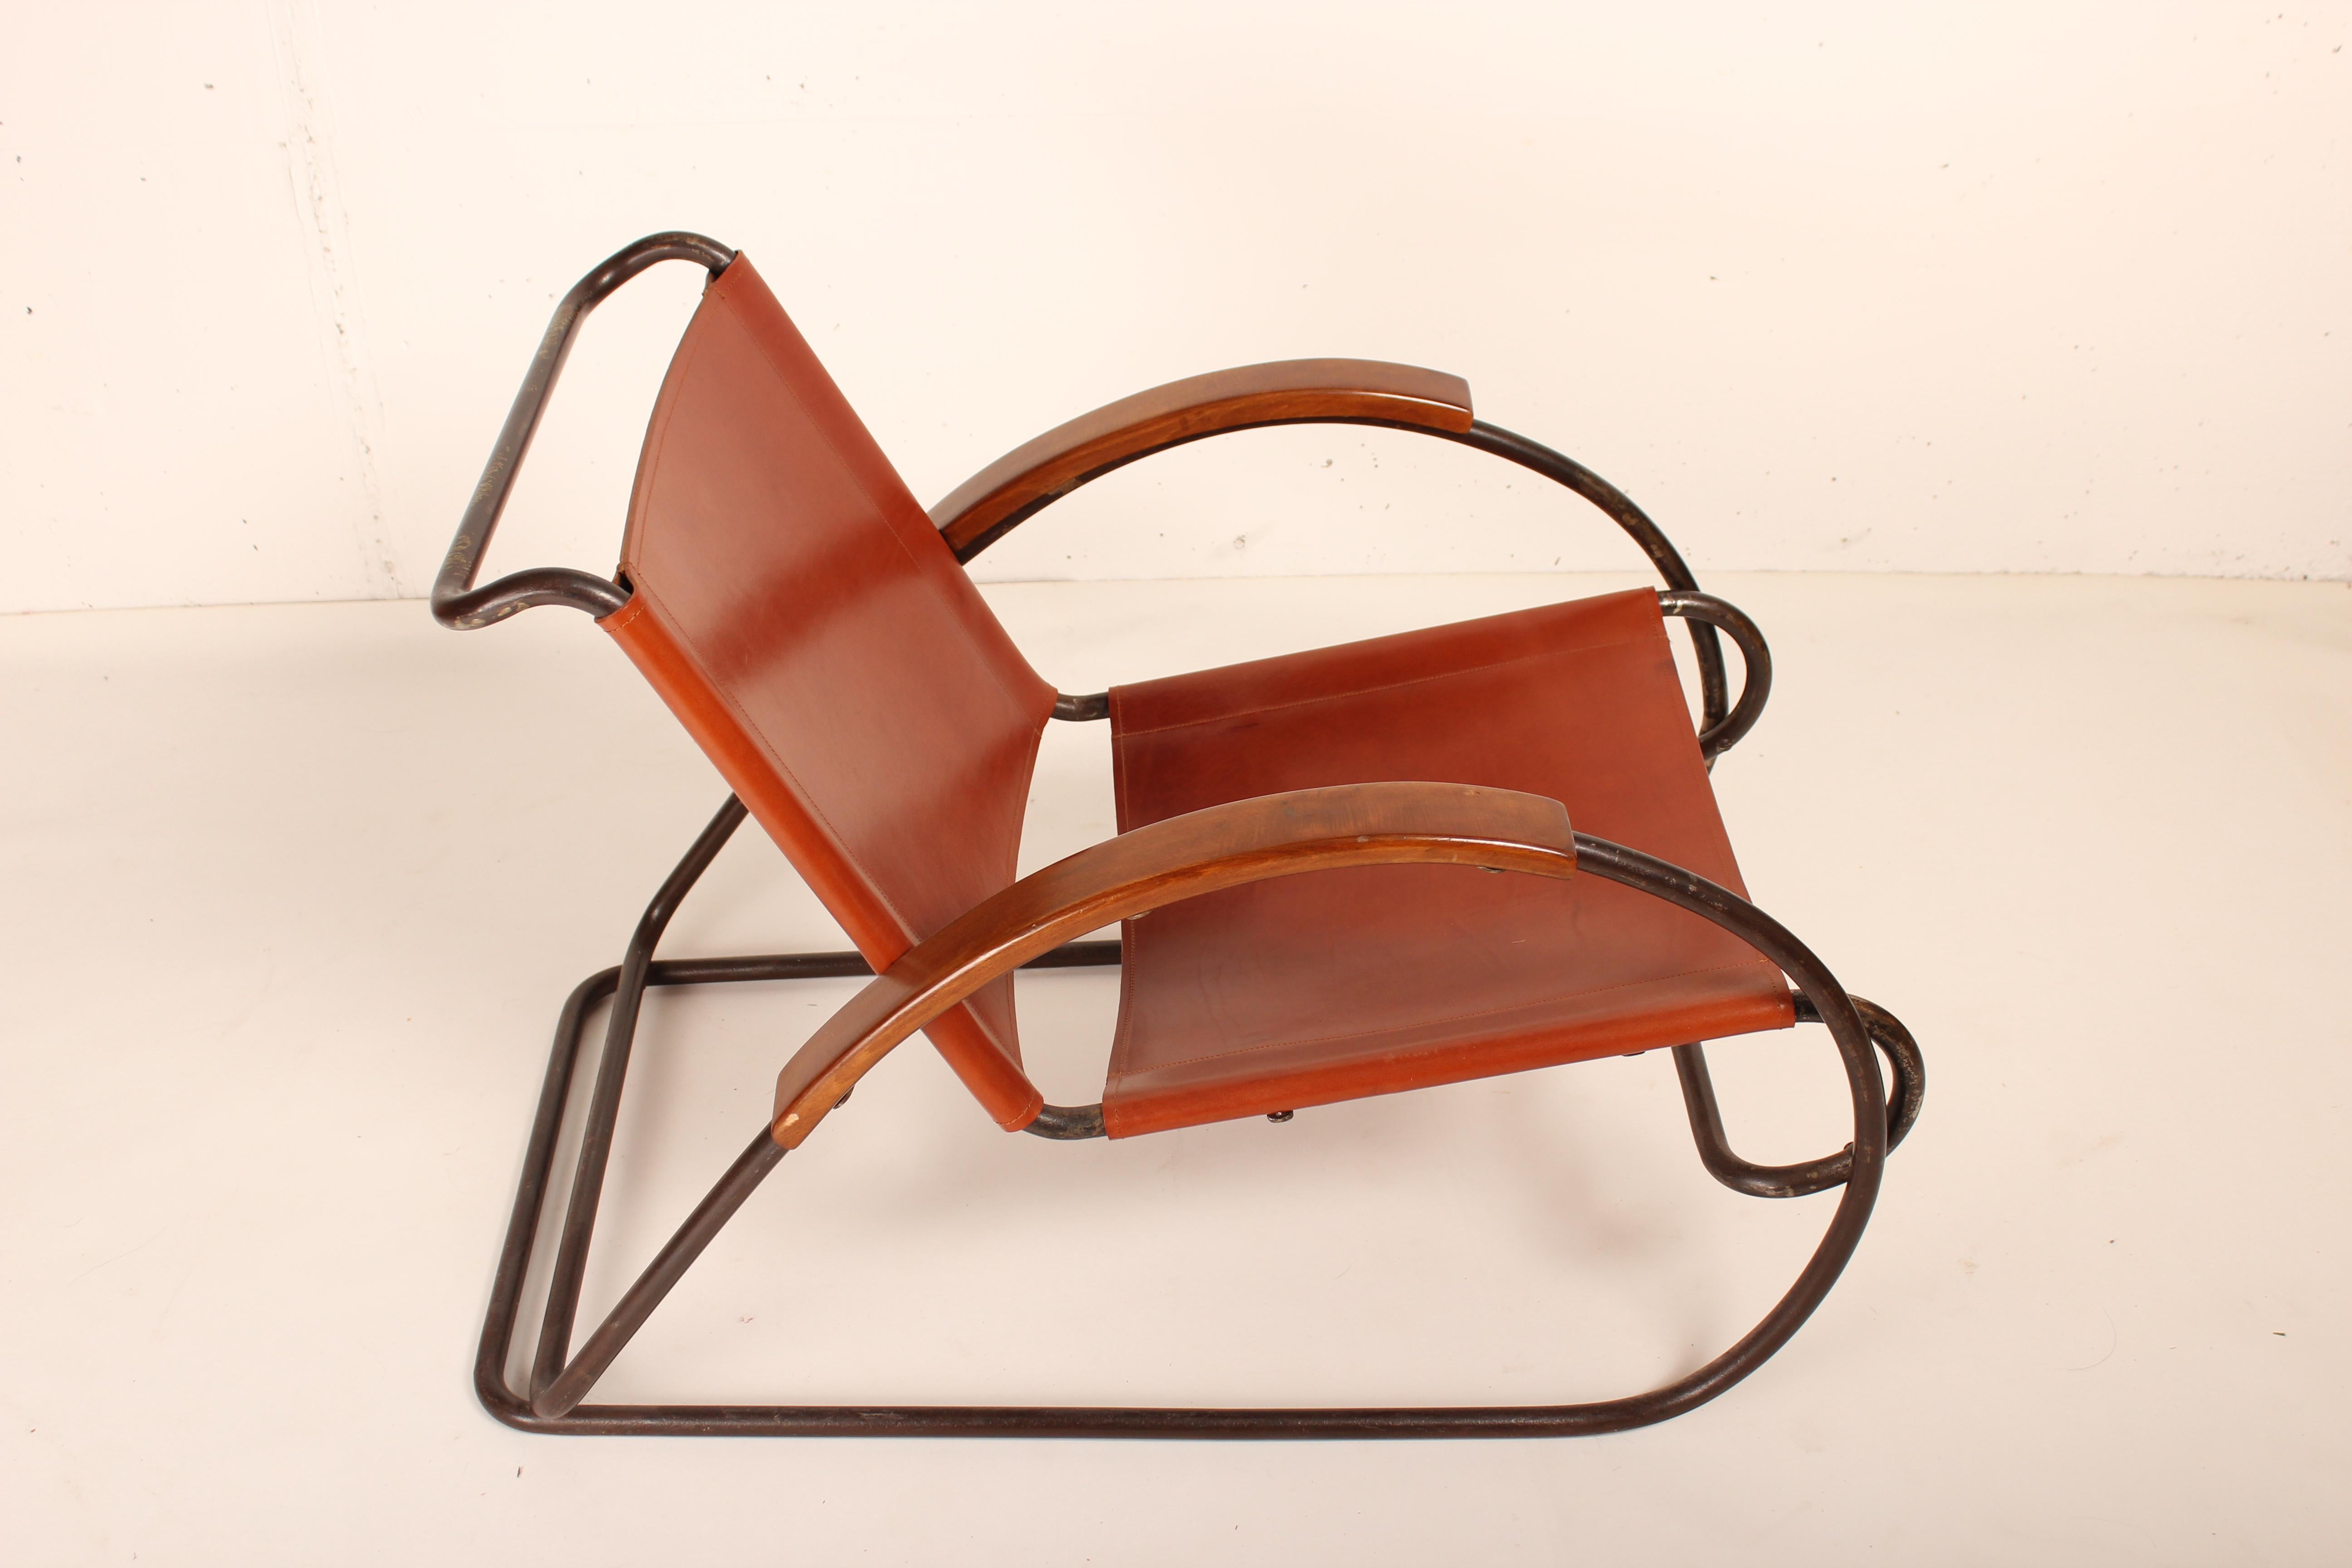 Rare fauteuil Bauhaus par Erich Dieckmann, Allemagne, 1931
Superbe chaise longue sculpturale, structure en métal tubulaire, bras en bois, assise et dossier restaurés en cuir cognac, Eisengarn original en mauvais état conservé pour les